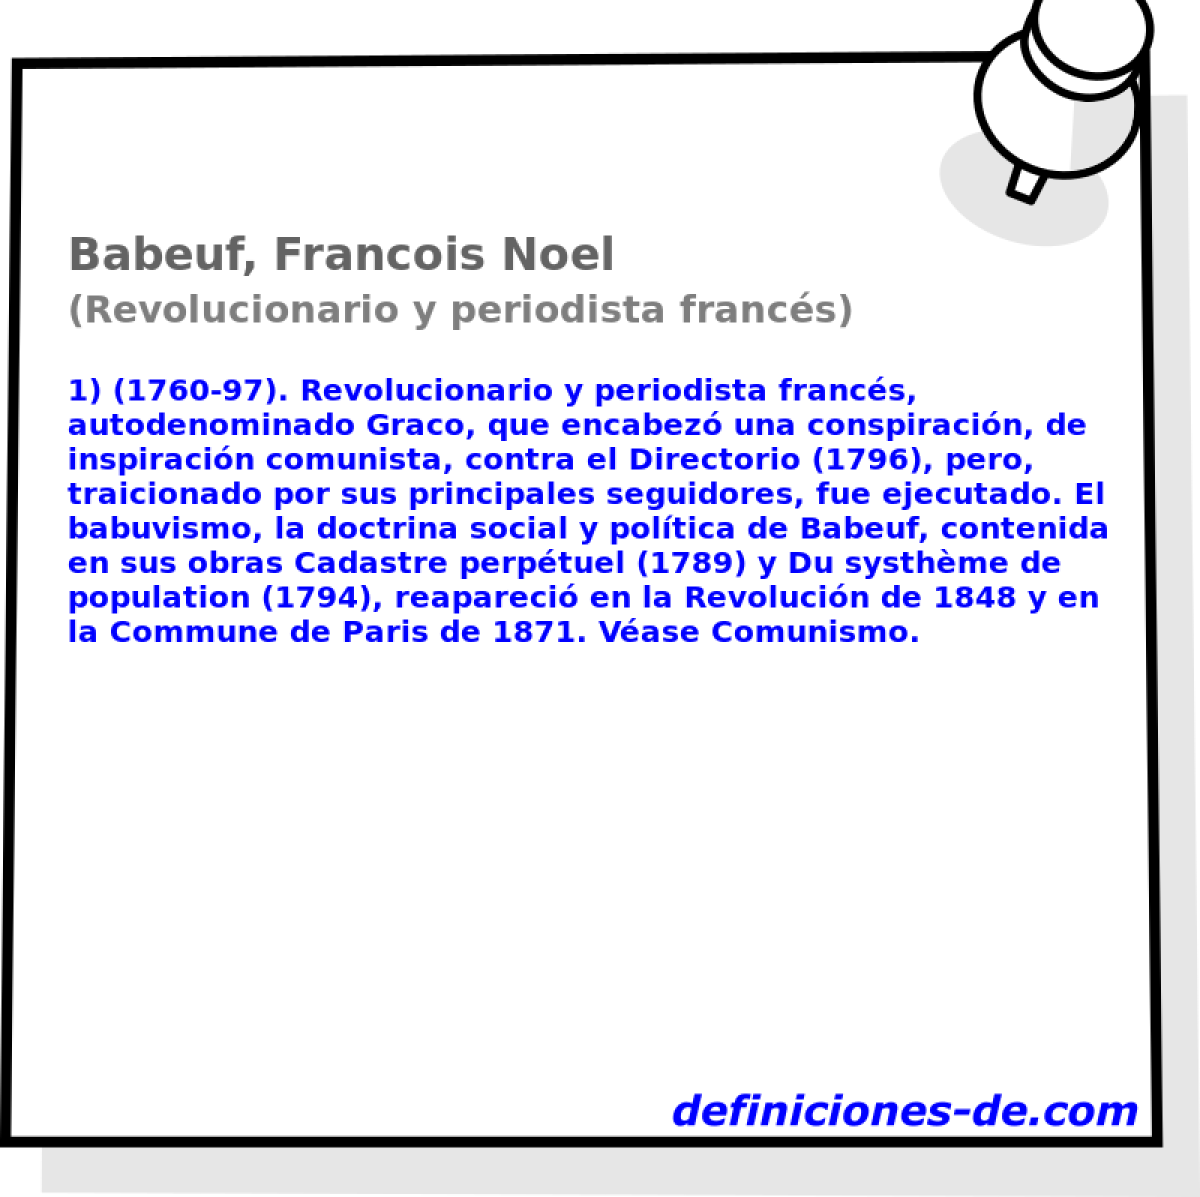 Babeuf, Francois Noel (Revolucionario y periodista francs)